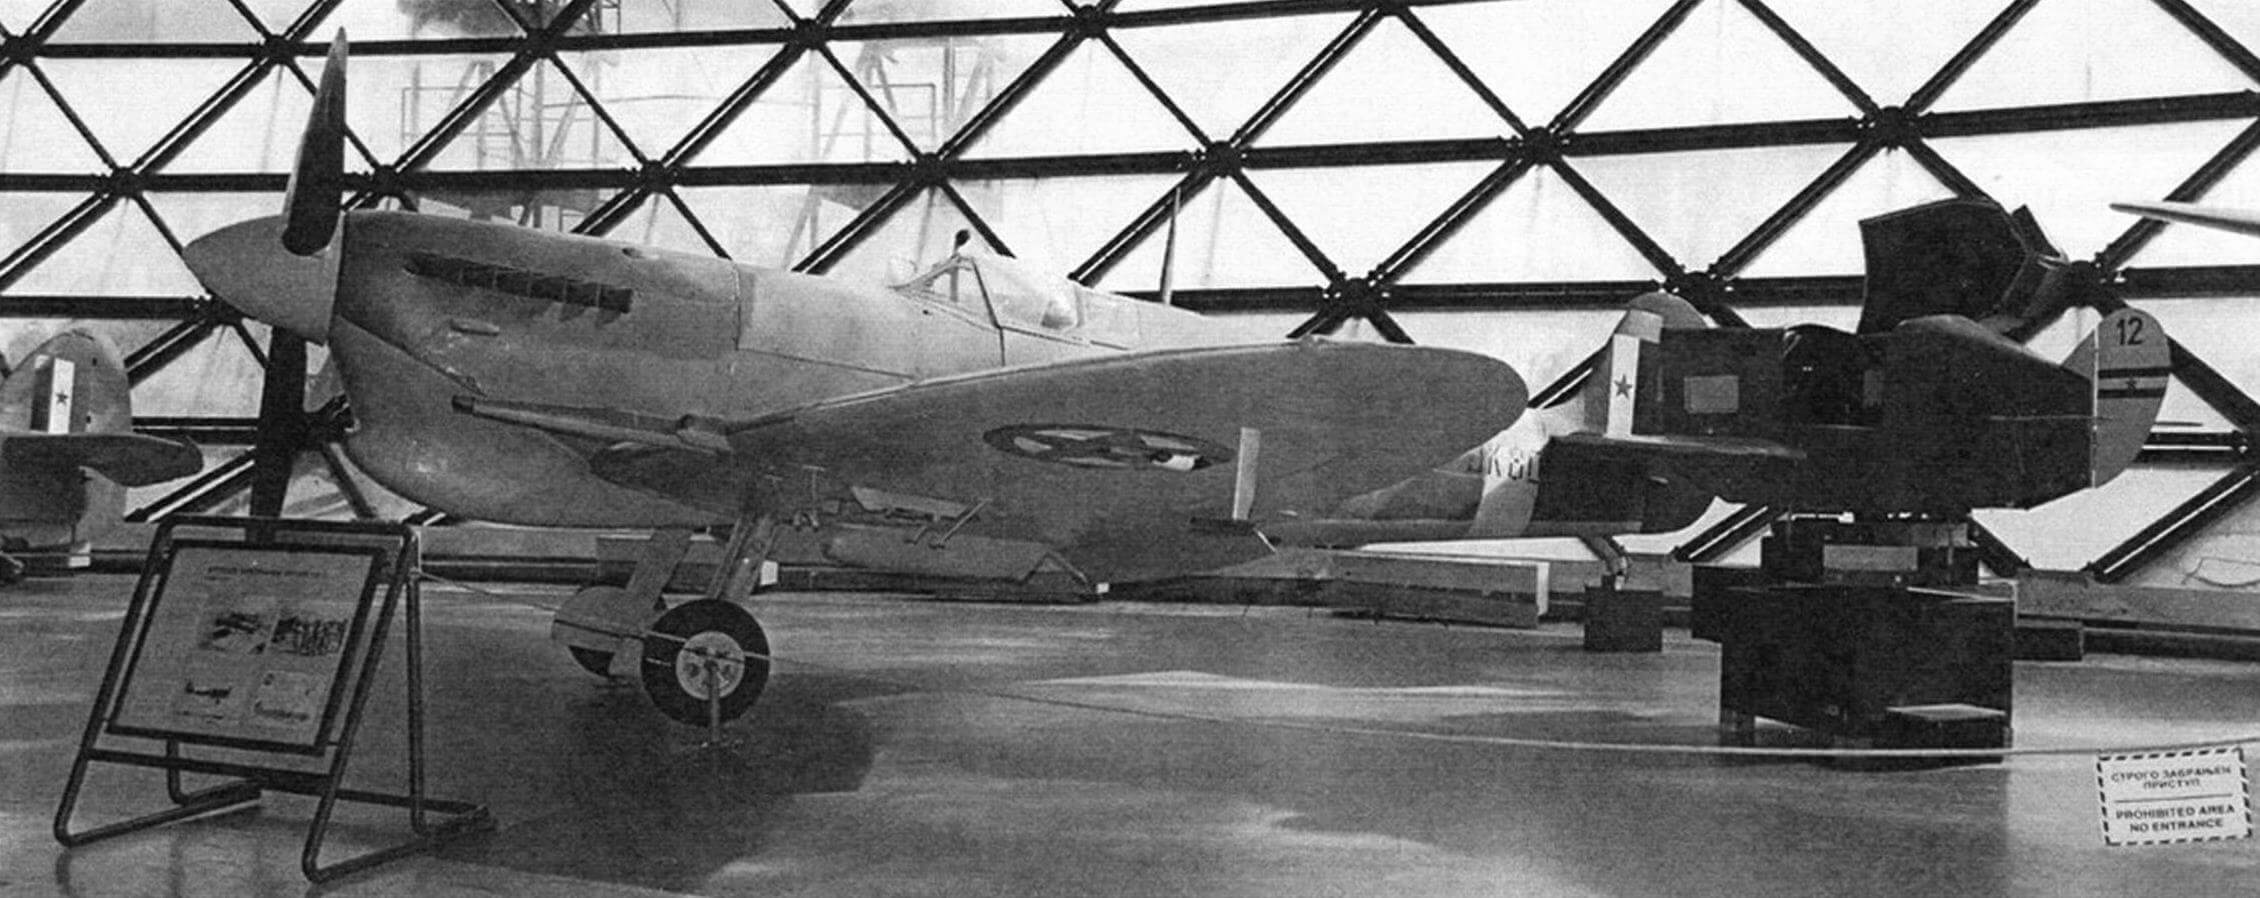 Единственный в мире истребитель Supermarine Spitfire Mk. Vc Trop, сохранившийся до наших дней